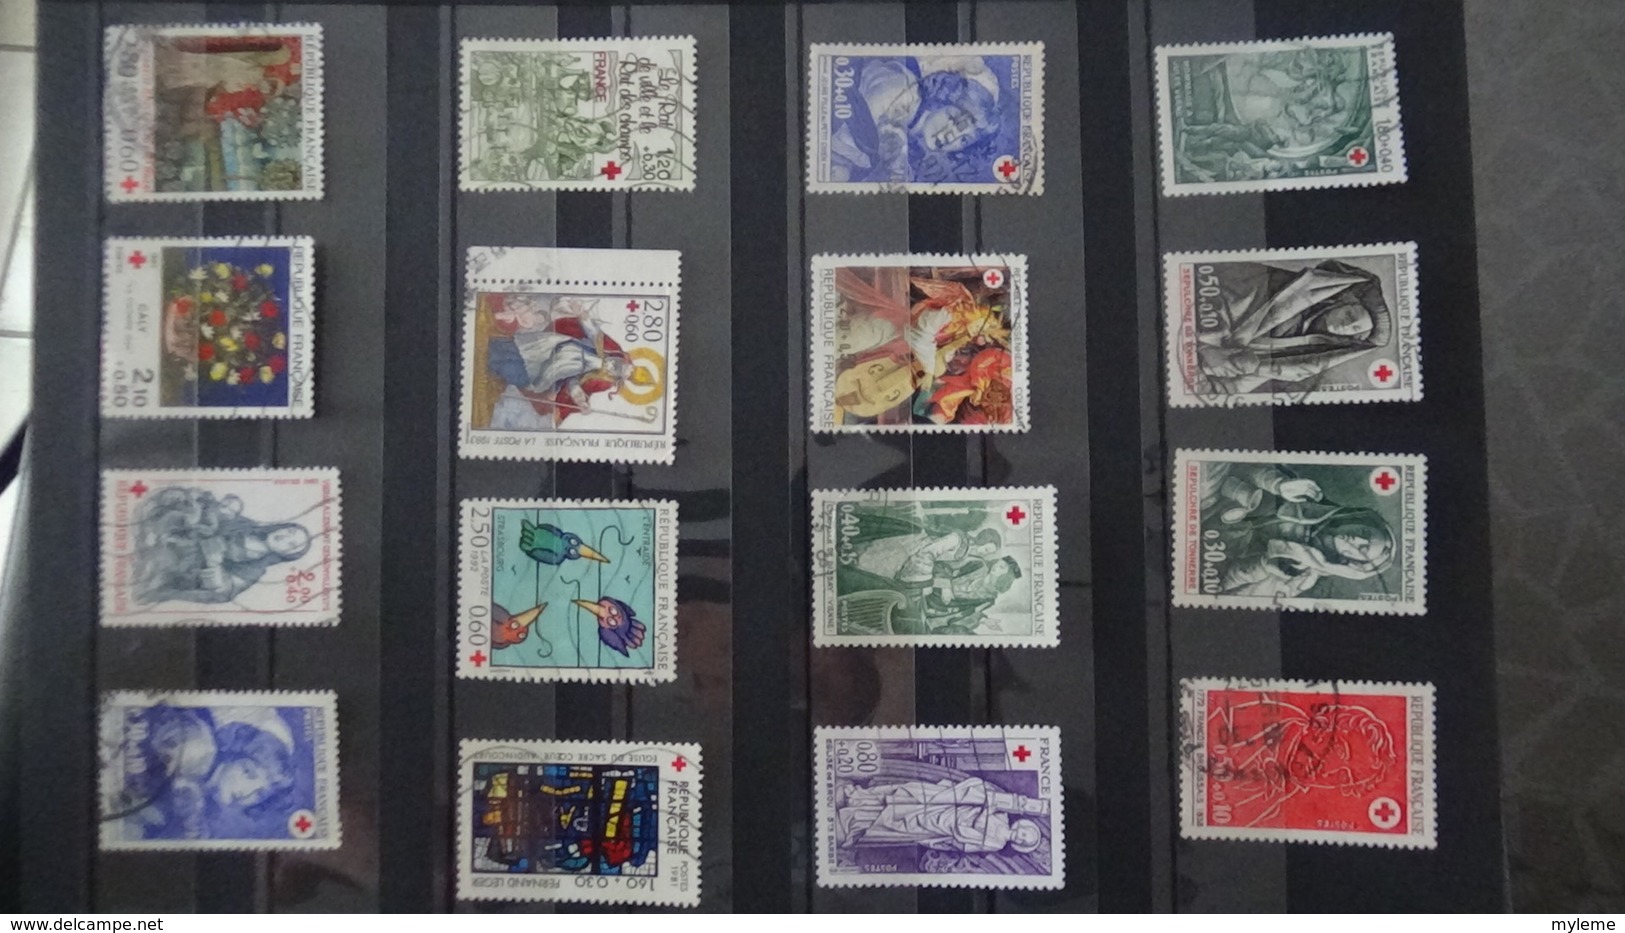 Bel ensemble de courriers, blocs et timbres croix rouges oblitérés de France dont 1 N° 306 ** (1 dent un peu courte) !!!